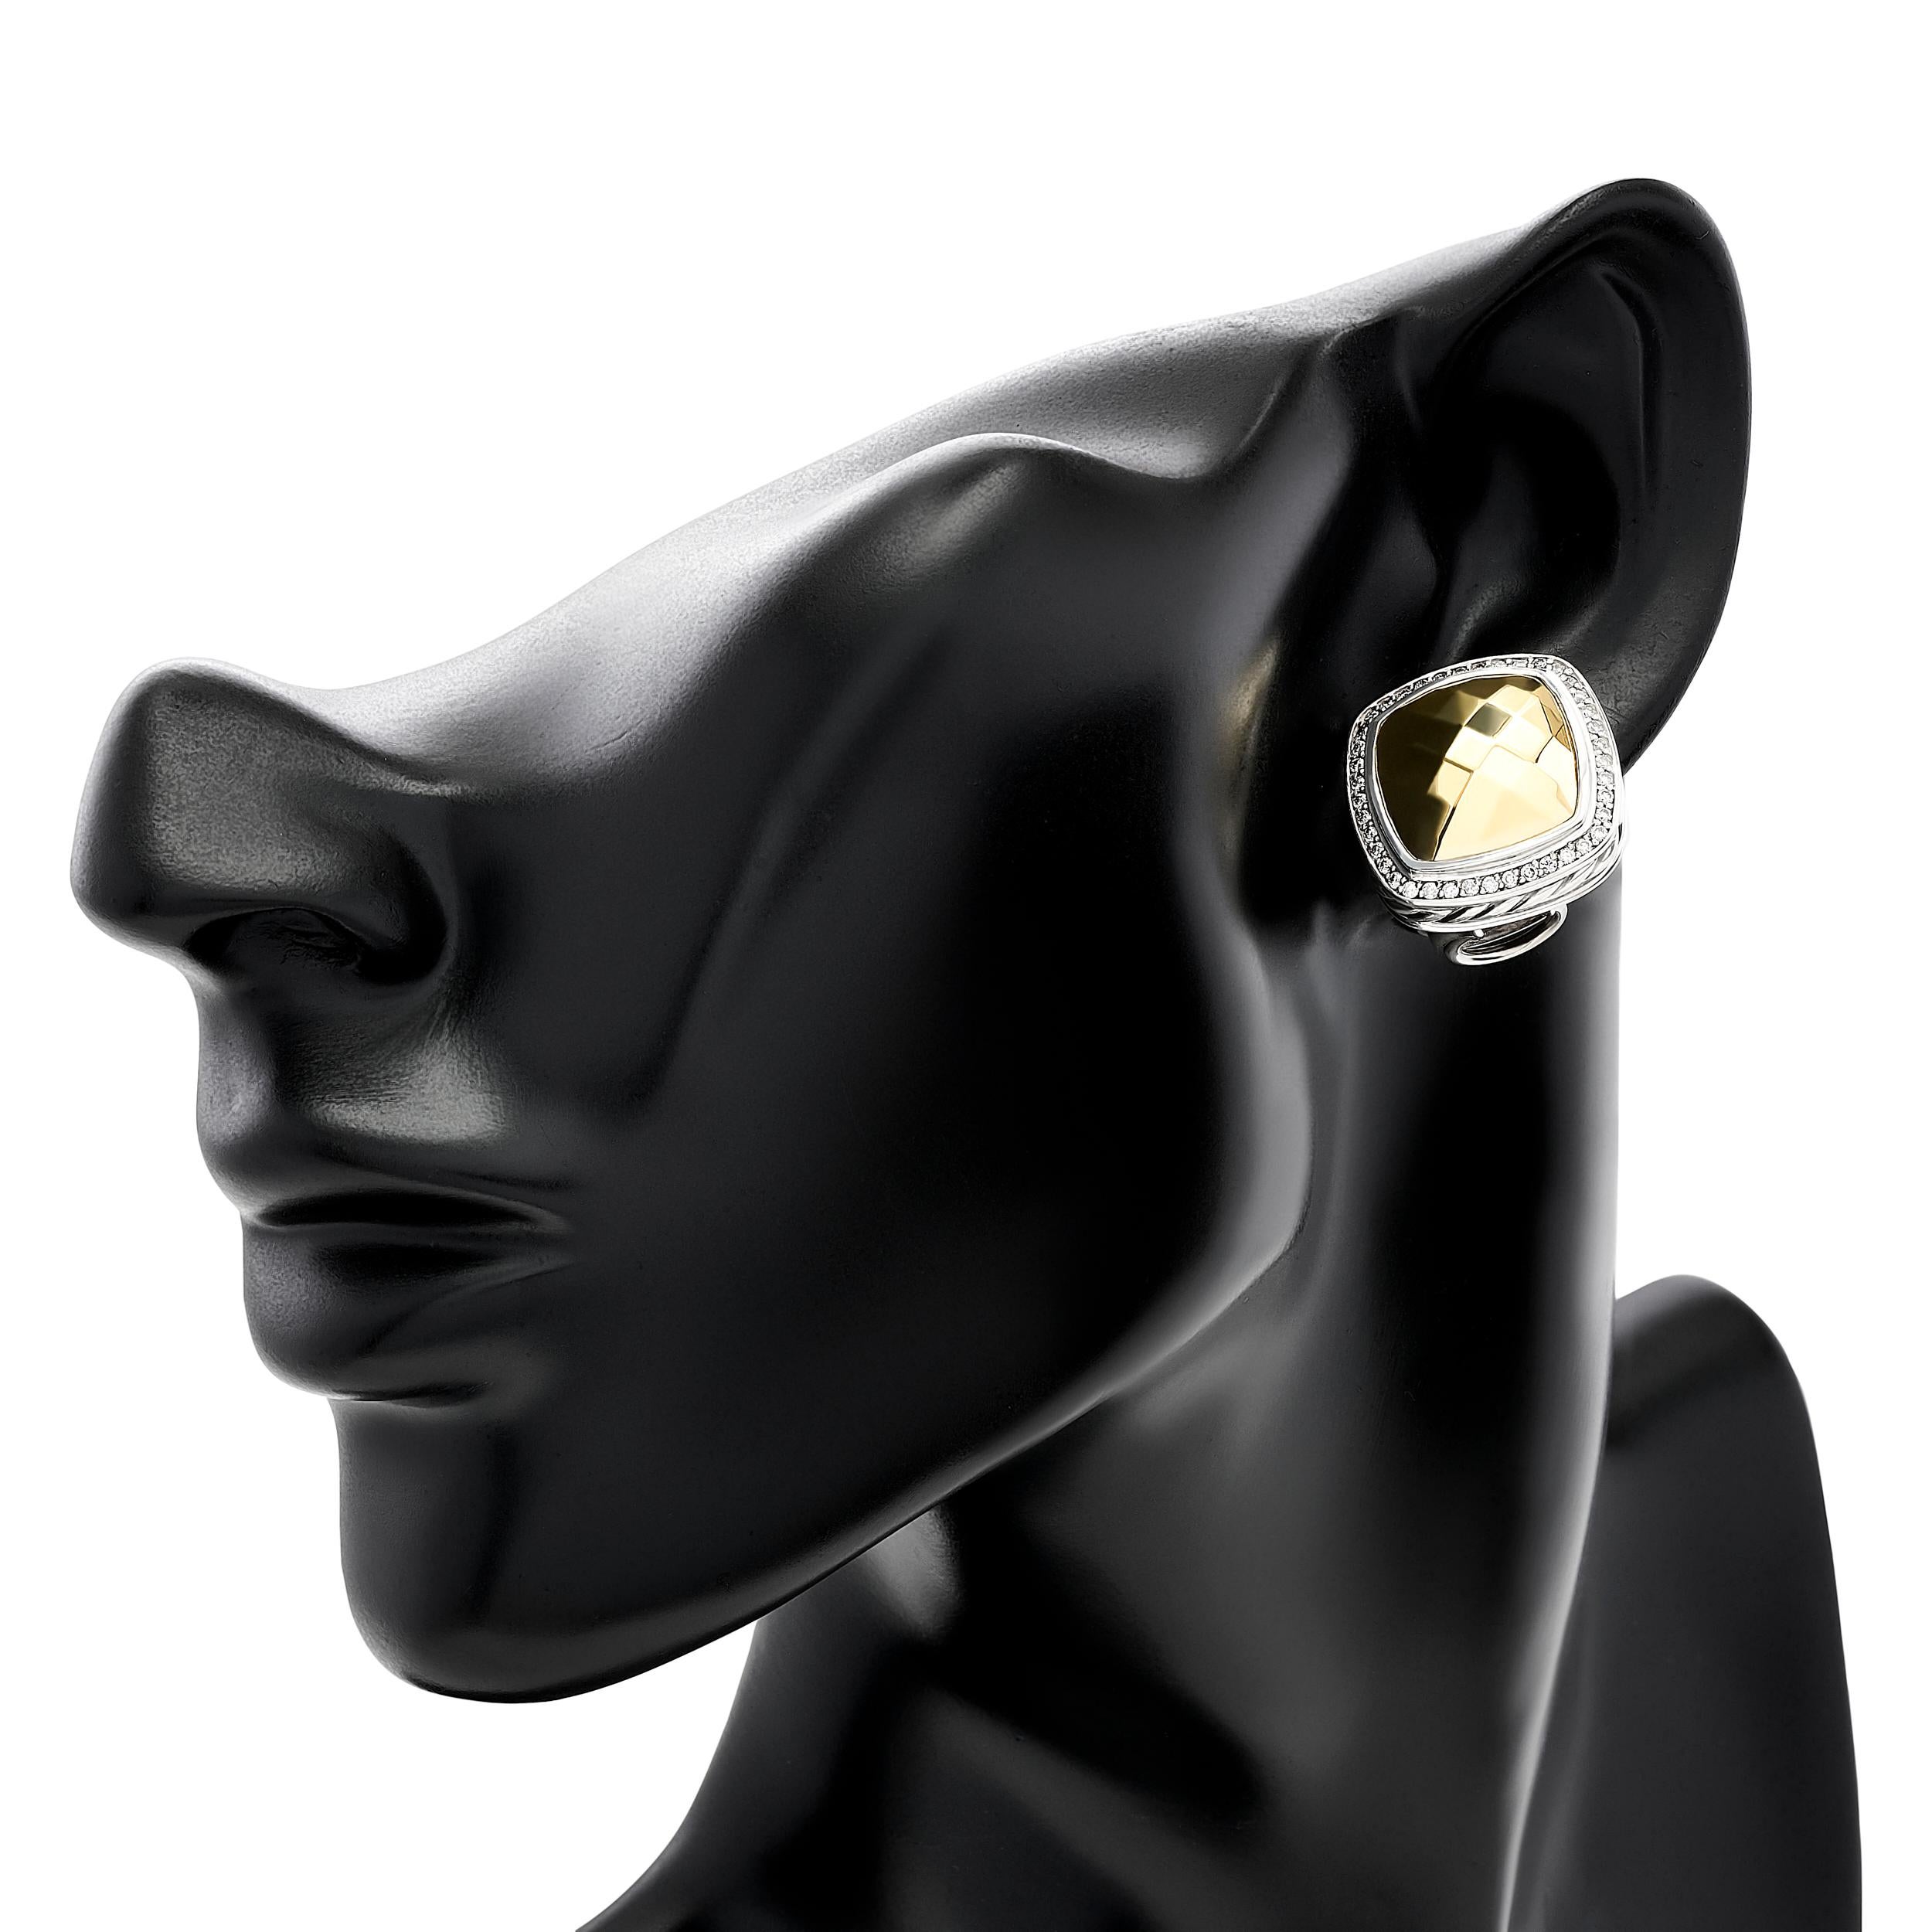 Die David Yurman Albion Ohrringe kombinieren die kontrastierenden Texturen von Silber und gehämmertem Gold, verziert mit einem funkelnden Diamantenhalo, was zu einer faszinierenden Mischung aus Modernität und klassischem Charme führt.

Die 82 runden